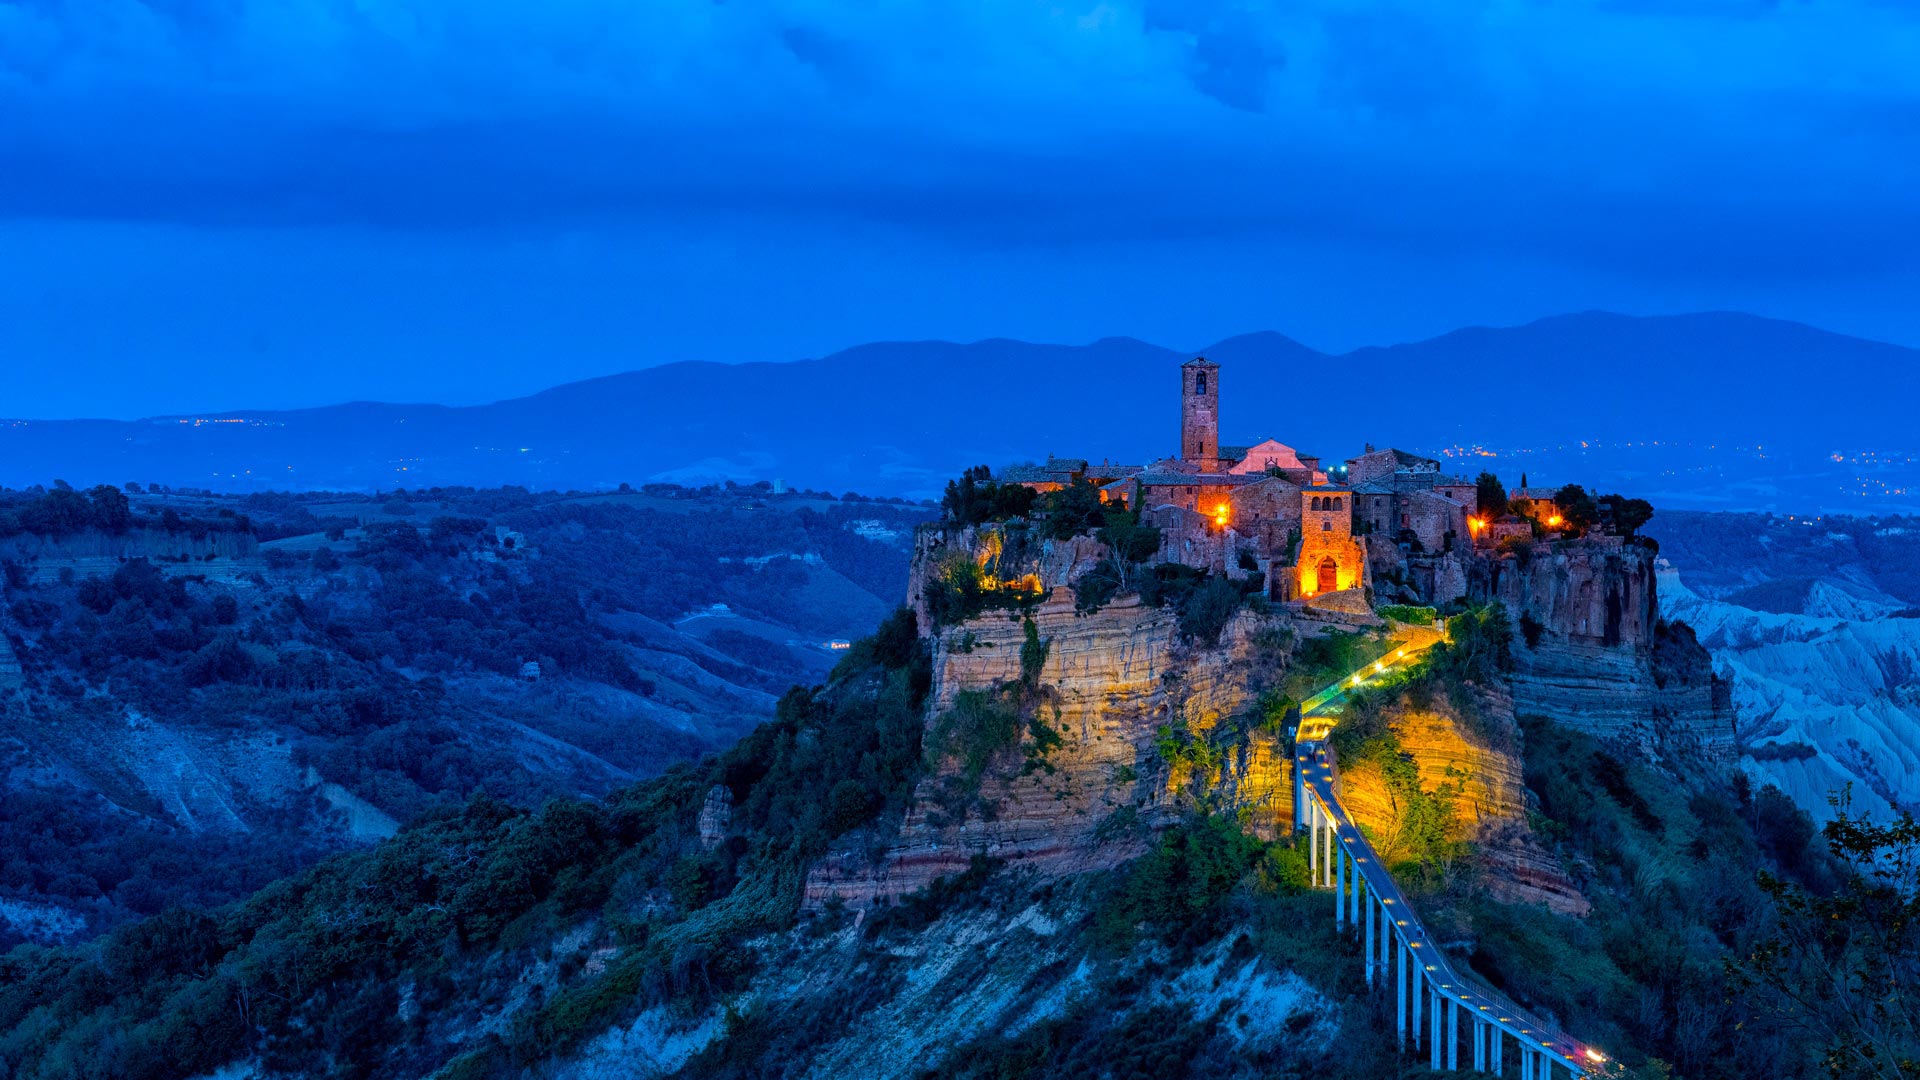 ｢チヴィタ・ディ・バーニョレージョ｣イタリア | Bingの画像